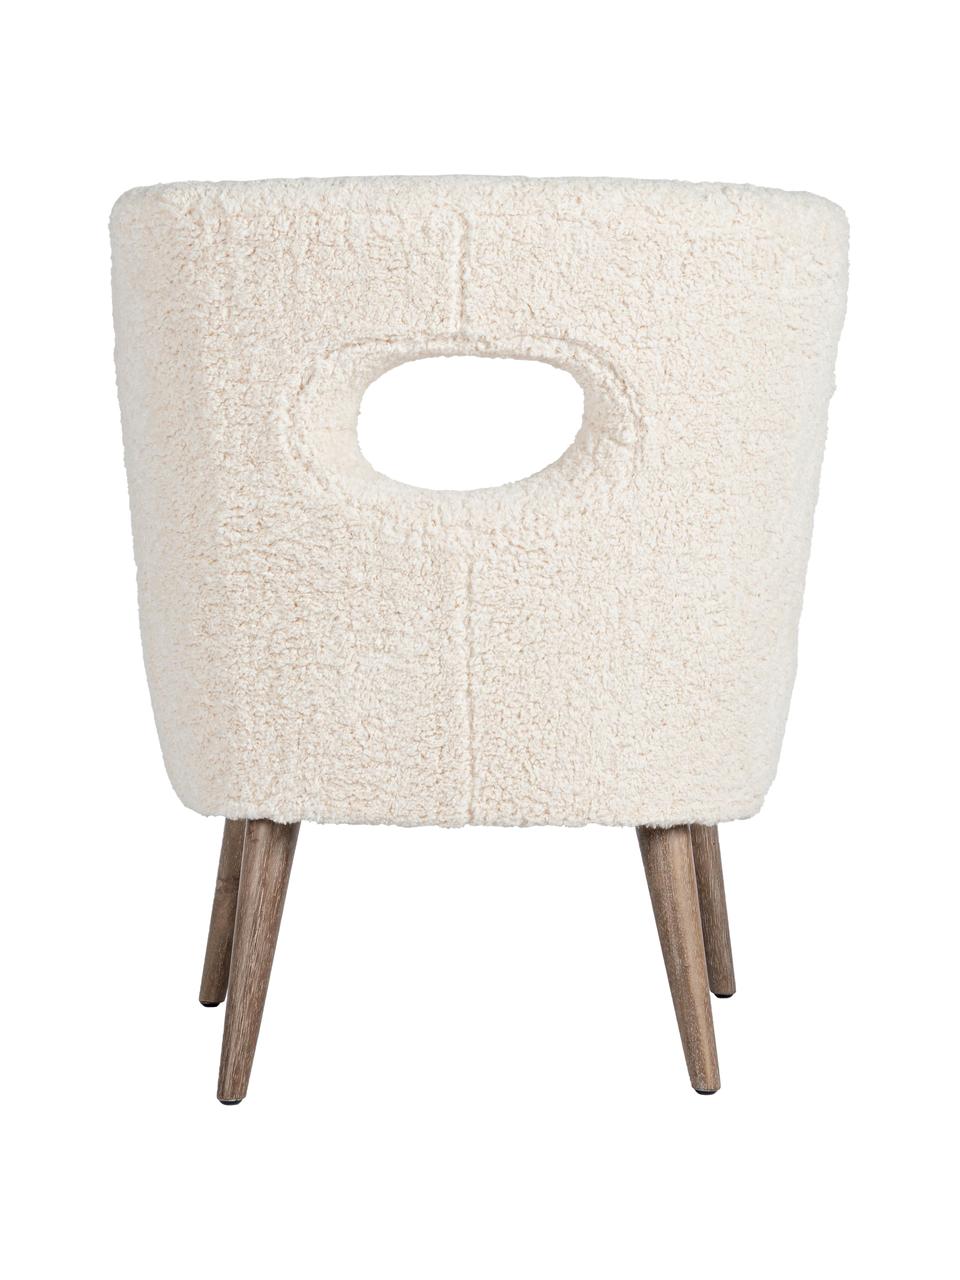 Fotel wypoczynkowy Teddy Cortina, Stelaż: drewno jodłowe, Nogi: drewno kauczukowe, Odcienie kremowego, S 65 x G 68 cm